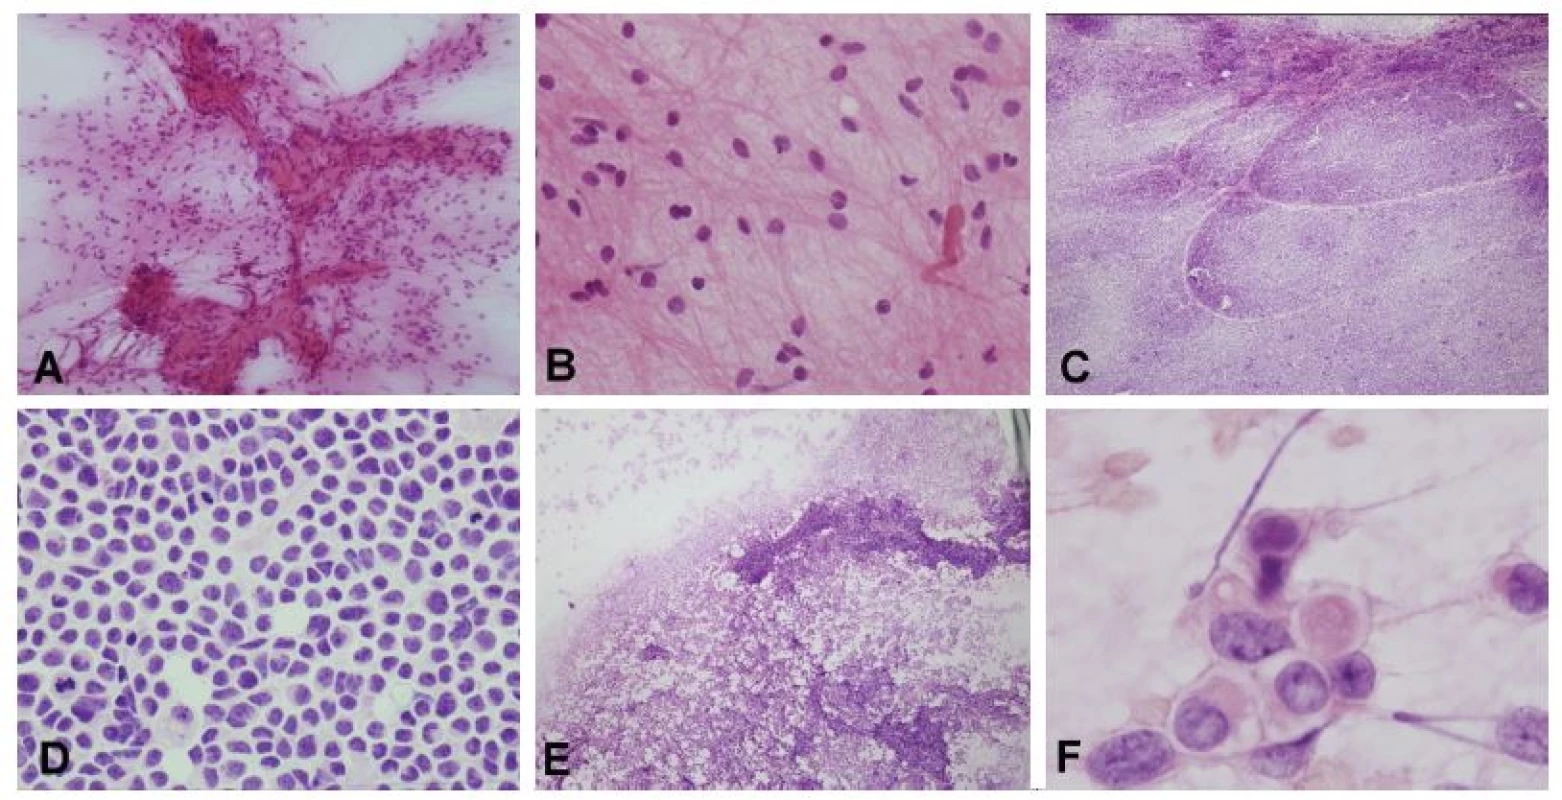 (A, B) Nádor mozočka u 6-ročného chlapca, s typickou radiologickou prezentáciou – cysta s kontrast-pozitívnym murálnym uzlíkom. V náterovej cytológii
bolo zrejmé, že sa jedná gliový tumor s cytologicky blandnými bunkami usporiadanými okolo abnormálnej cievy (pripomína mikrovaskulárnu proliferáciu
high-grade gliómov, ale stena je pravdepodobne hyalínne zmenená) (A). V detaile monotónna populácia s blandnými jadrami a dlhými piloidnými výbežkami.
Užitočným pomocným znakom je prítomnosť Rosenthalovych vláken. Peroperačná a definitívna diagnóza: pilocytický astrocytóm. (C, D) Solídny, kontrast-pozitívny
tumor mozočka u 5-ročného chlapca. Náter bol rovnomerný, išlo o léziu s nízkou kohezivitou nádorových buniek (C). Jednalo o malé bunky s minimom
cytoplazmy, „salt and pepper“ chromatínom, bez nápadnejších jadierok a početnými mitózami a apoptózami (D). Peroperačná a definitívna diagnóza: medulloblastóm,
klasický typ. U dospelého pacienta by pri podobnom náleze bola v diferenciálnej diagnóze na prvom mieste metastáza malobunkového karcinómu.
(E, F) Tumor IV. komory u 2–ročného chlapca. V náterovej cytológii boli zachytené jednak kohezívnejšie pseudopapilárne usporiadanie, celkovo však
bol náter diskohezívny (E). Vo veľkom zväčšení charakteristické rabdoidné bunky (F). Peroperačná a definitívna diagnóza: atypický teratoidný/rabdoidný tumor